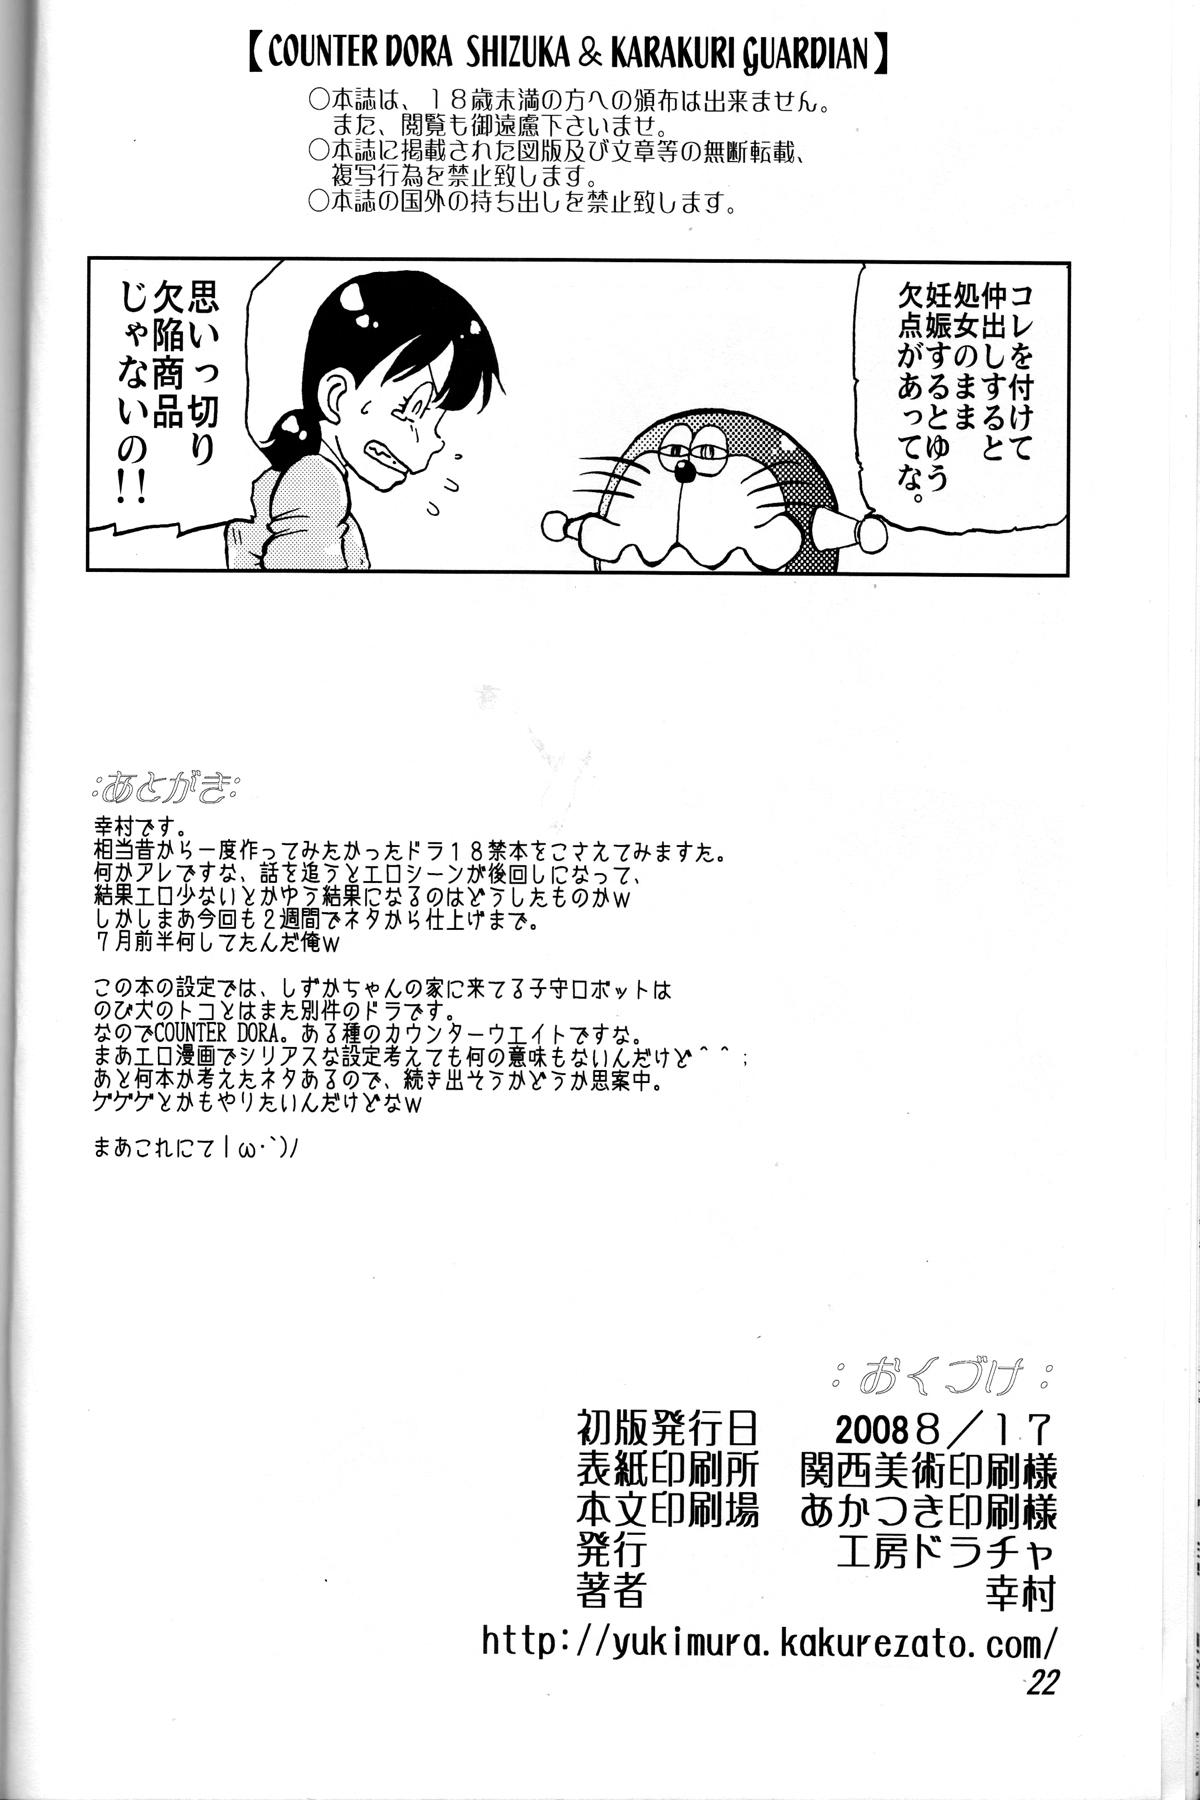 Tetas Grandes Shizuka & Kurikuri Guardian - Doraemon Kiteretsu daihyakka Glamcore - Page 22